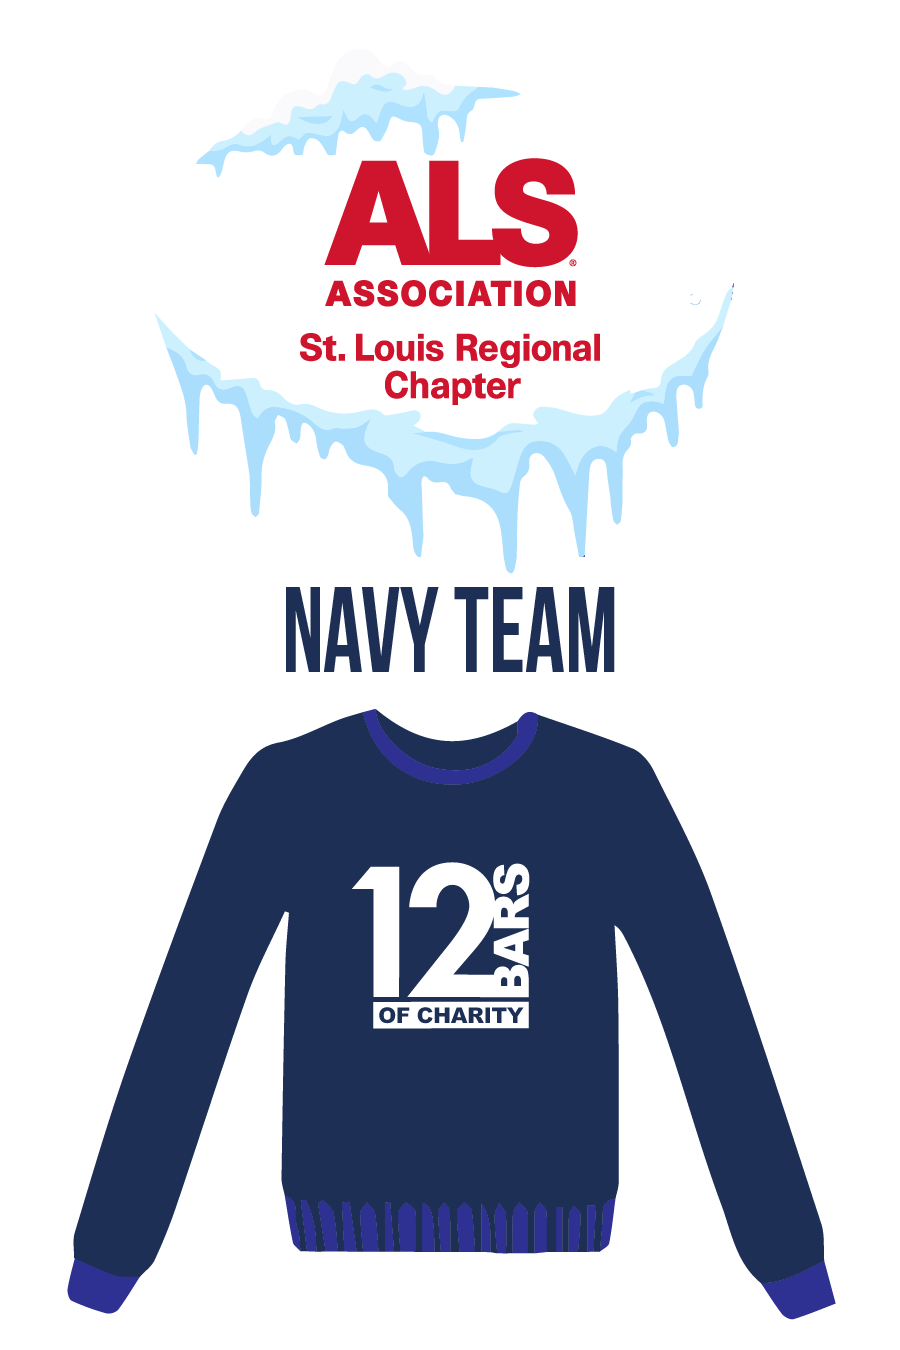 ALS Association - Team Navy (STL)